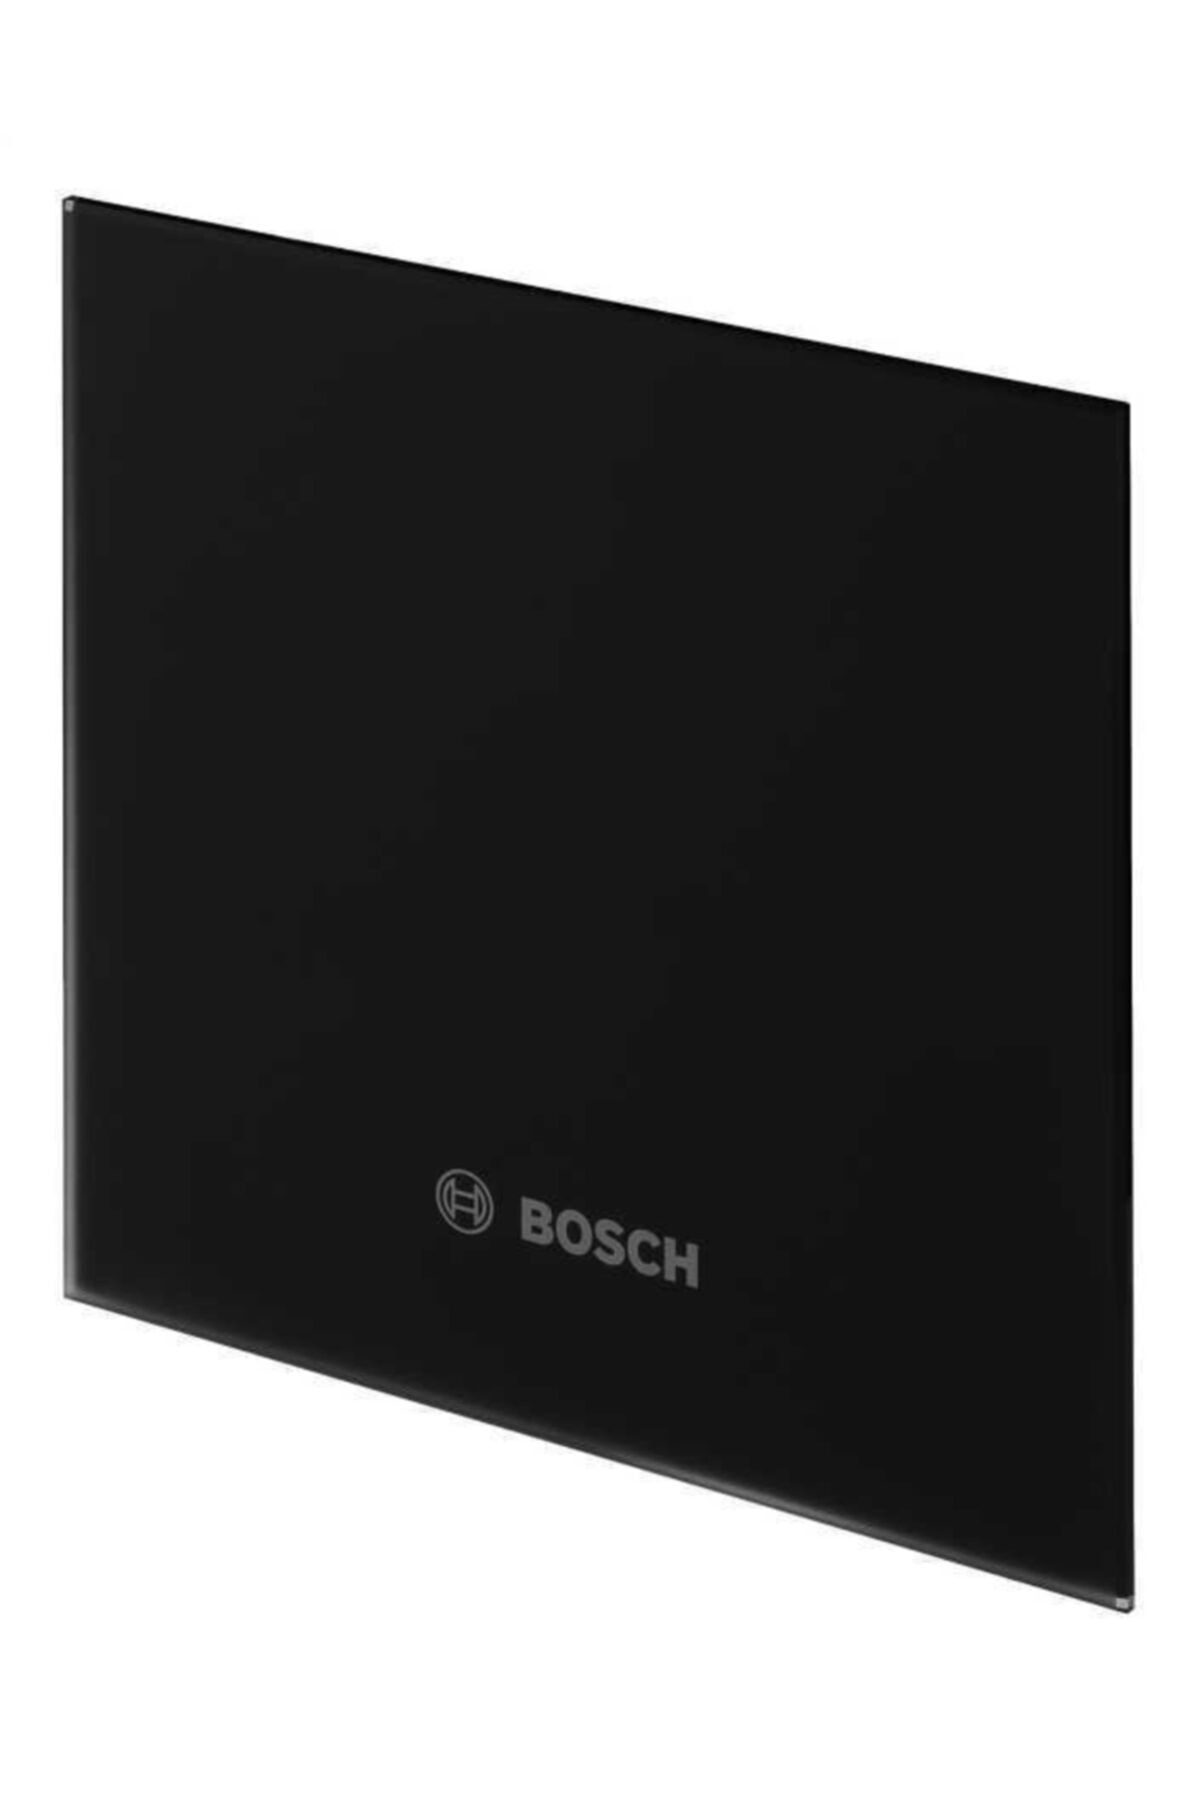 Bosch Dp100 Gb Parlak Siyah Cam Dekoratif Panel  F1700WS100 Serisi Aspiratör İçindir Sadece Kapak